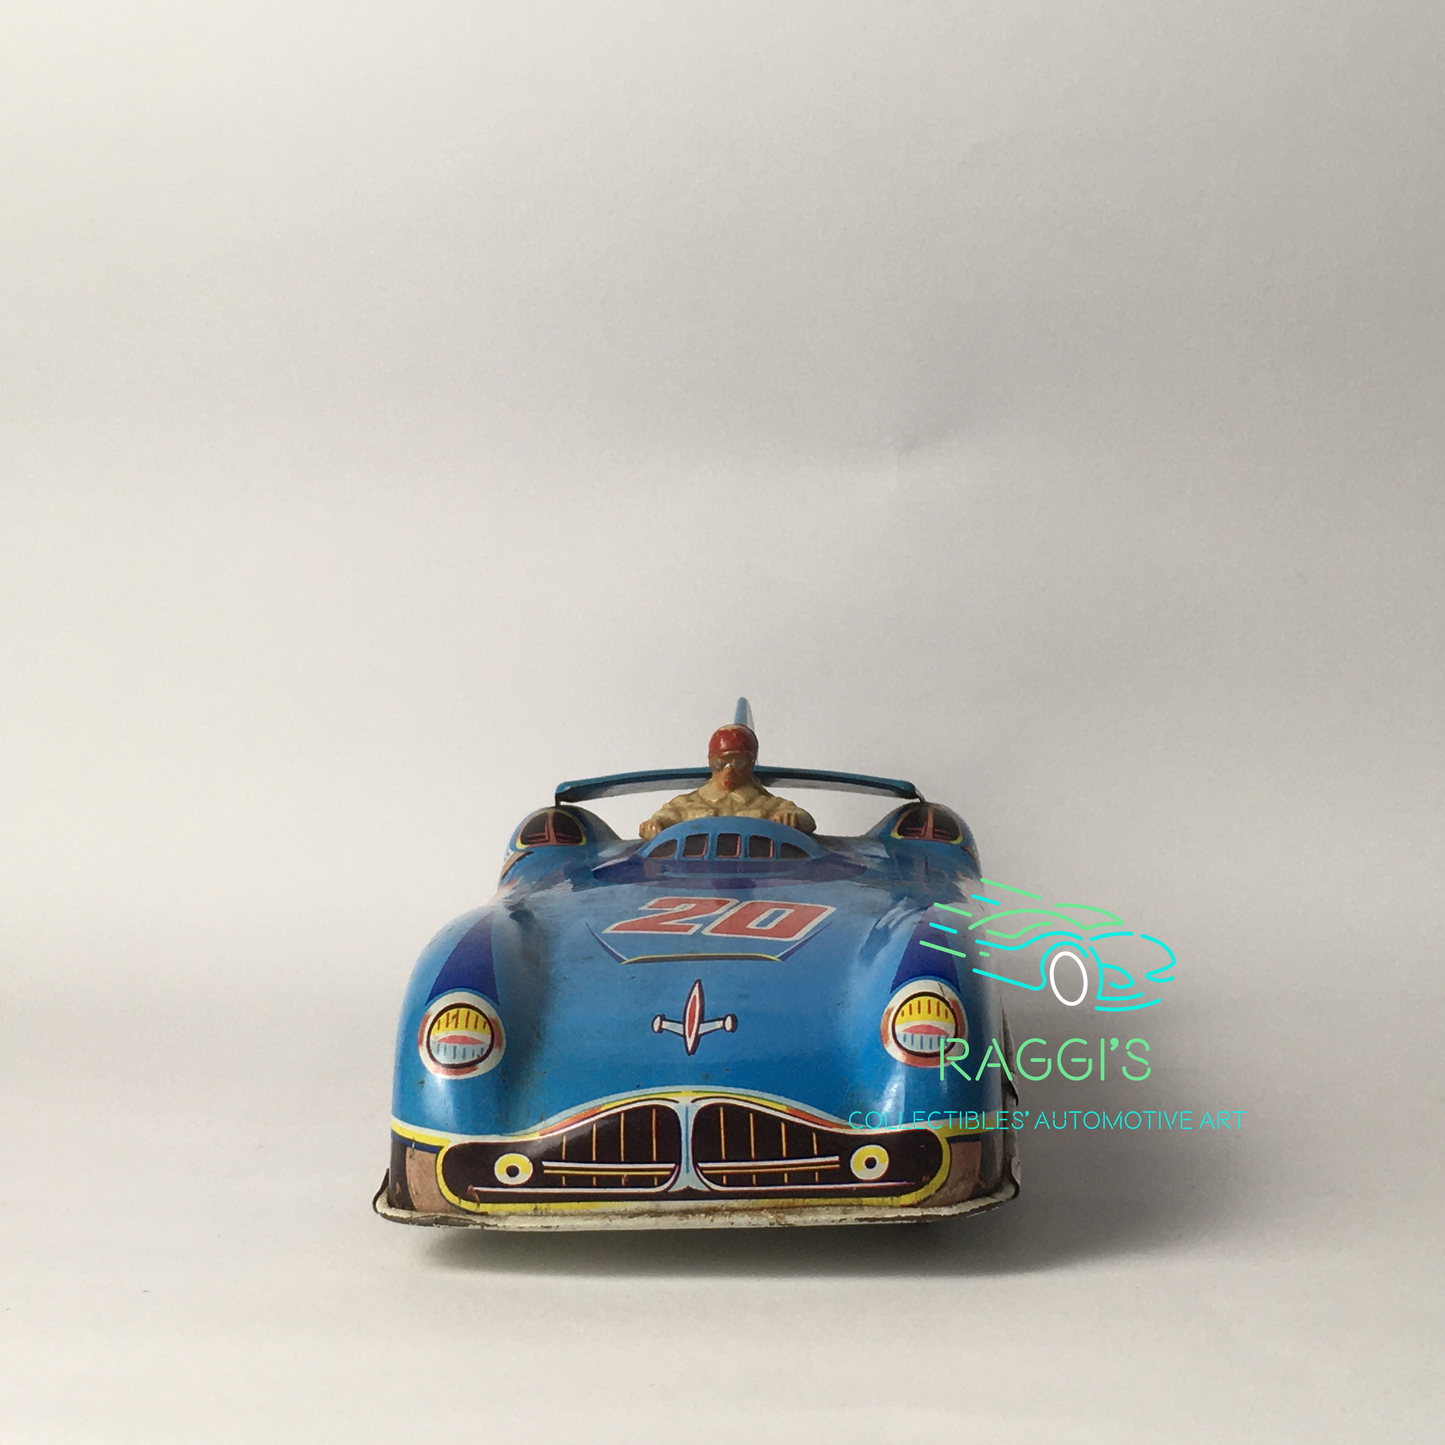 Vintage Toys, Macchina Sportiva in Latta con Pilota e Funzionamento a Frizione e Latta Cromo Litografata - Raggi's Collectibles' Automotive Art